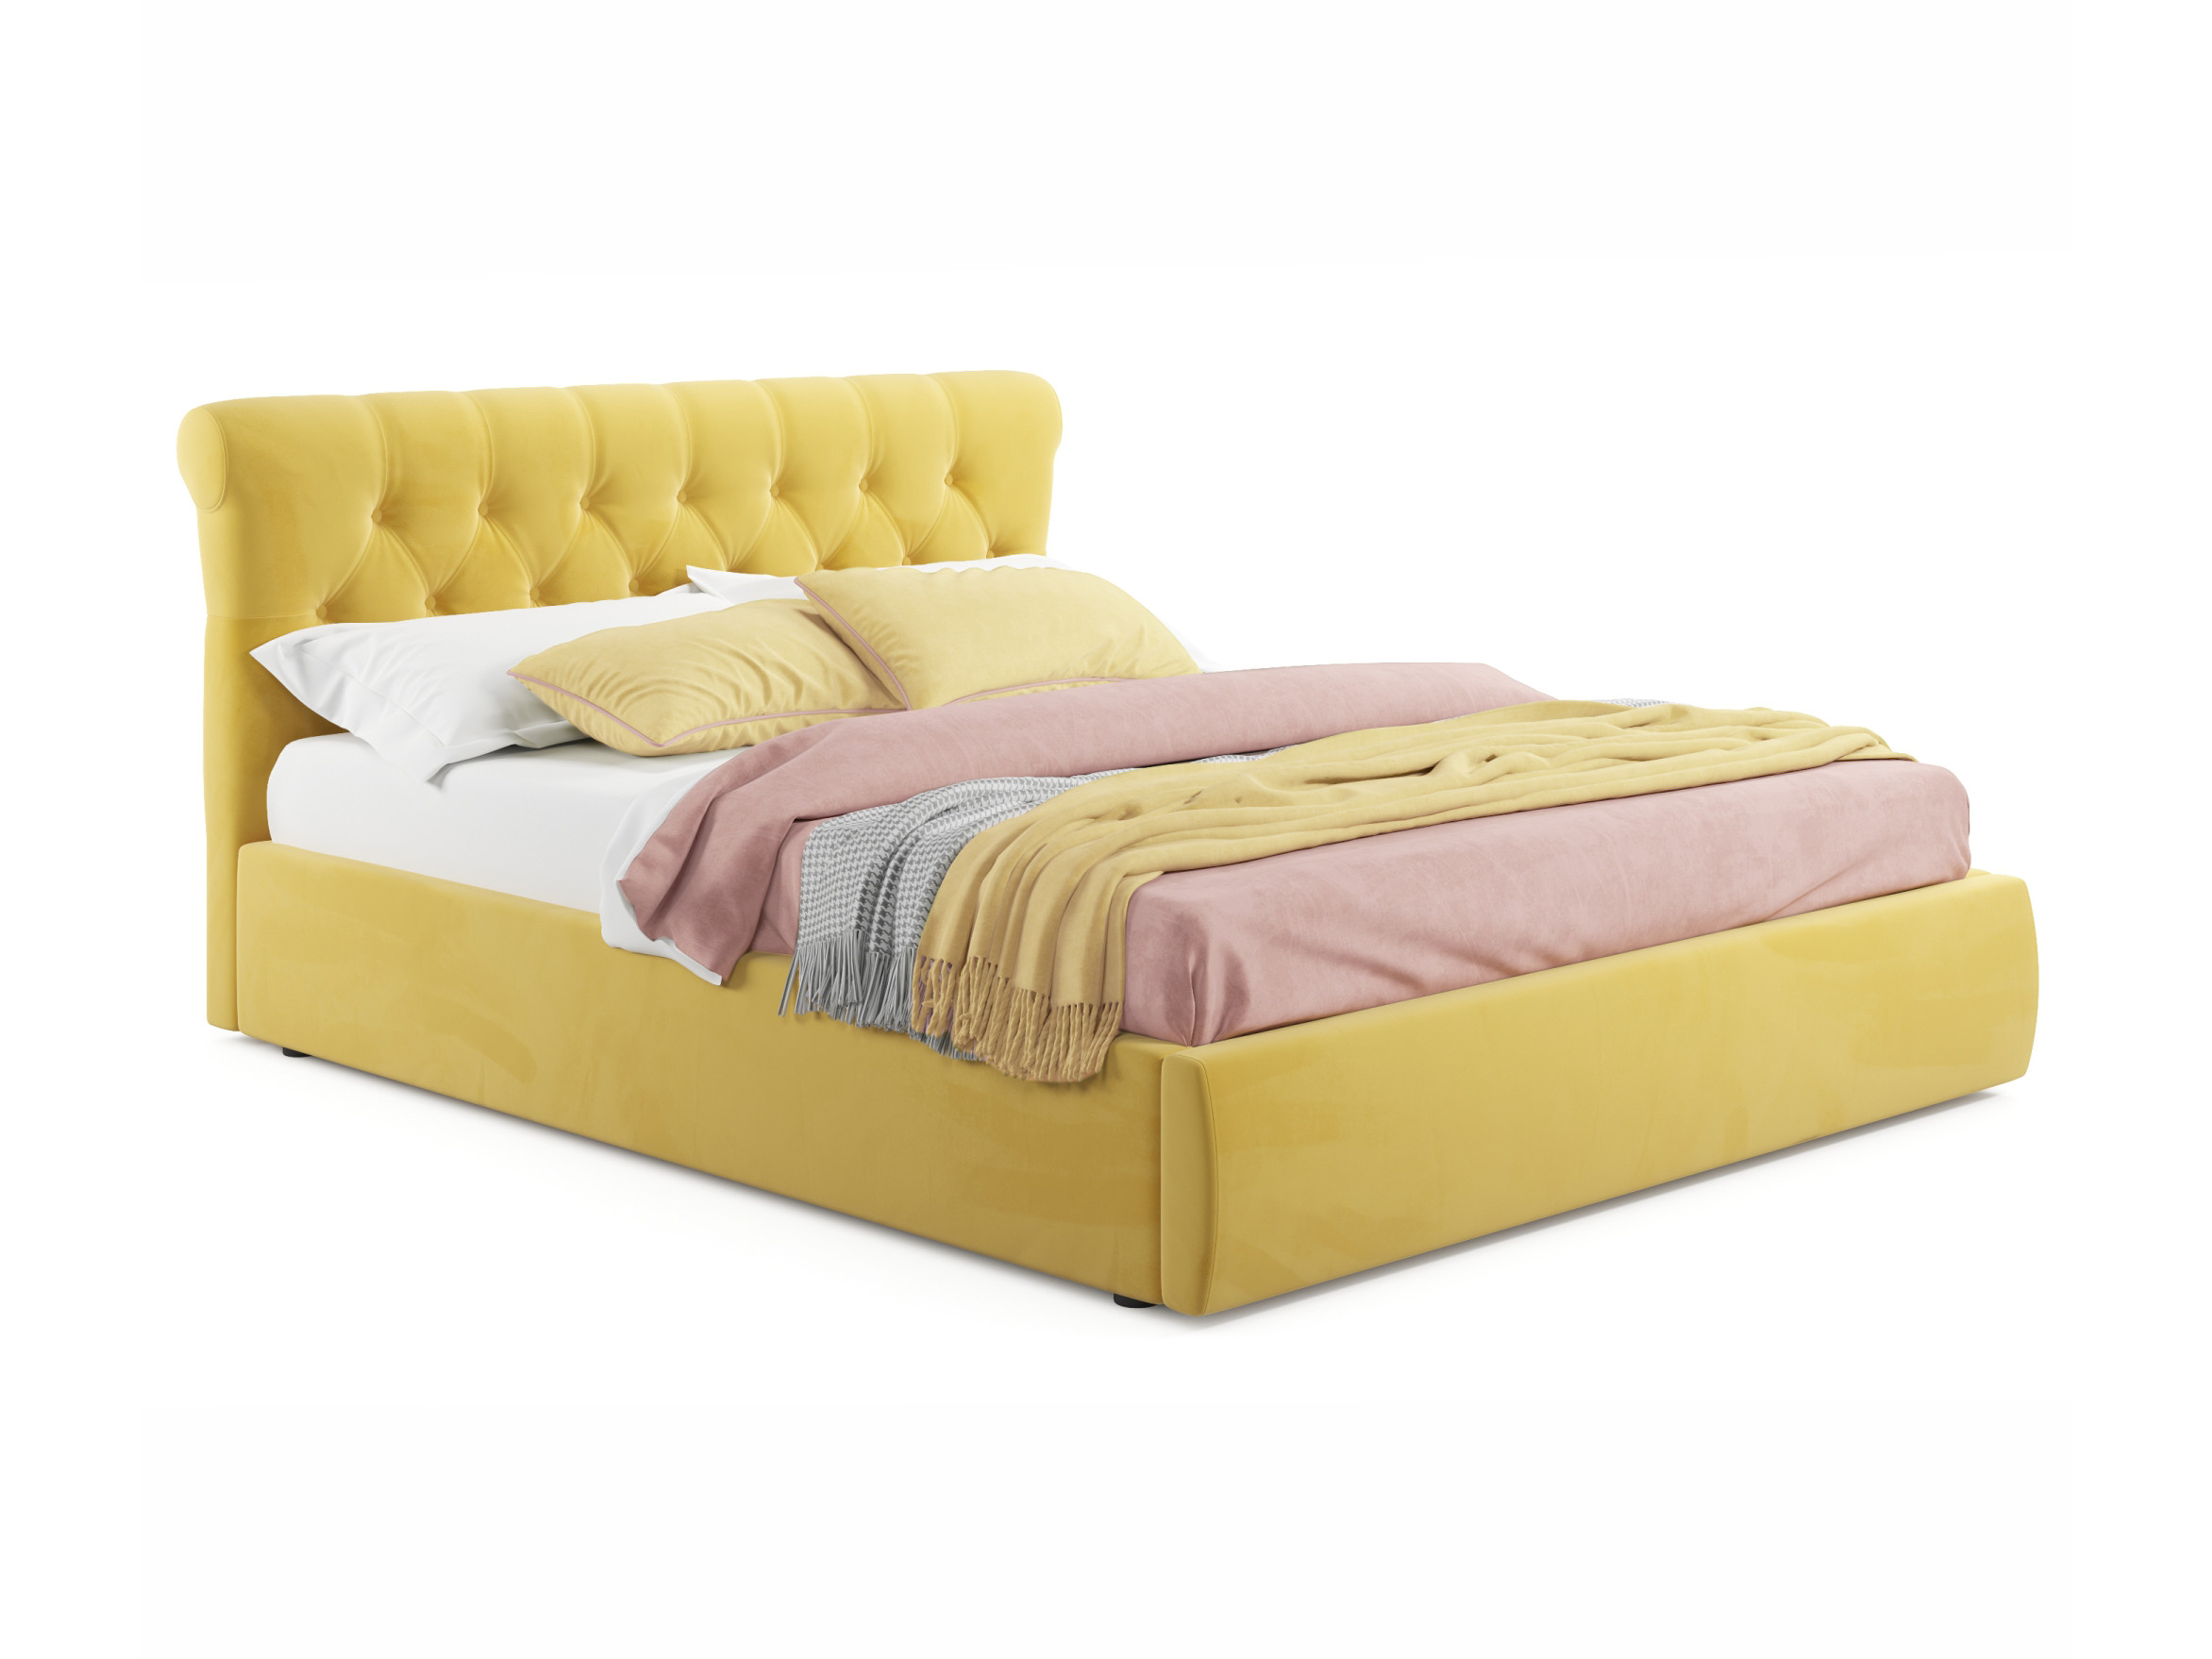 Мягкая кровать Ameli 1800 желтая с подъемным механизмом желтый, Желтый, Велюр, ДСП мягкая кровать ameli 1600 желтая с подъемным механизмом желтый желтый велюр дсп